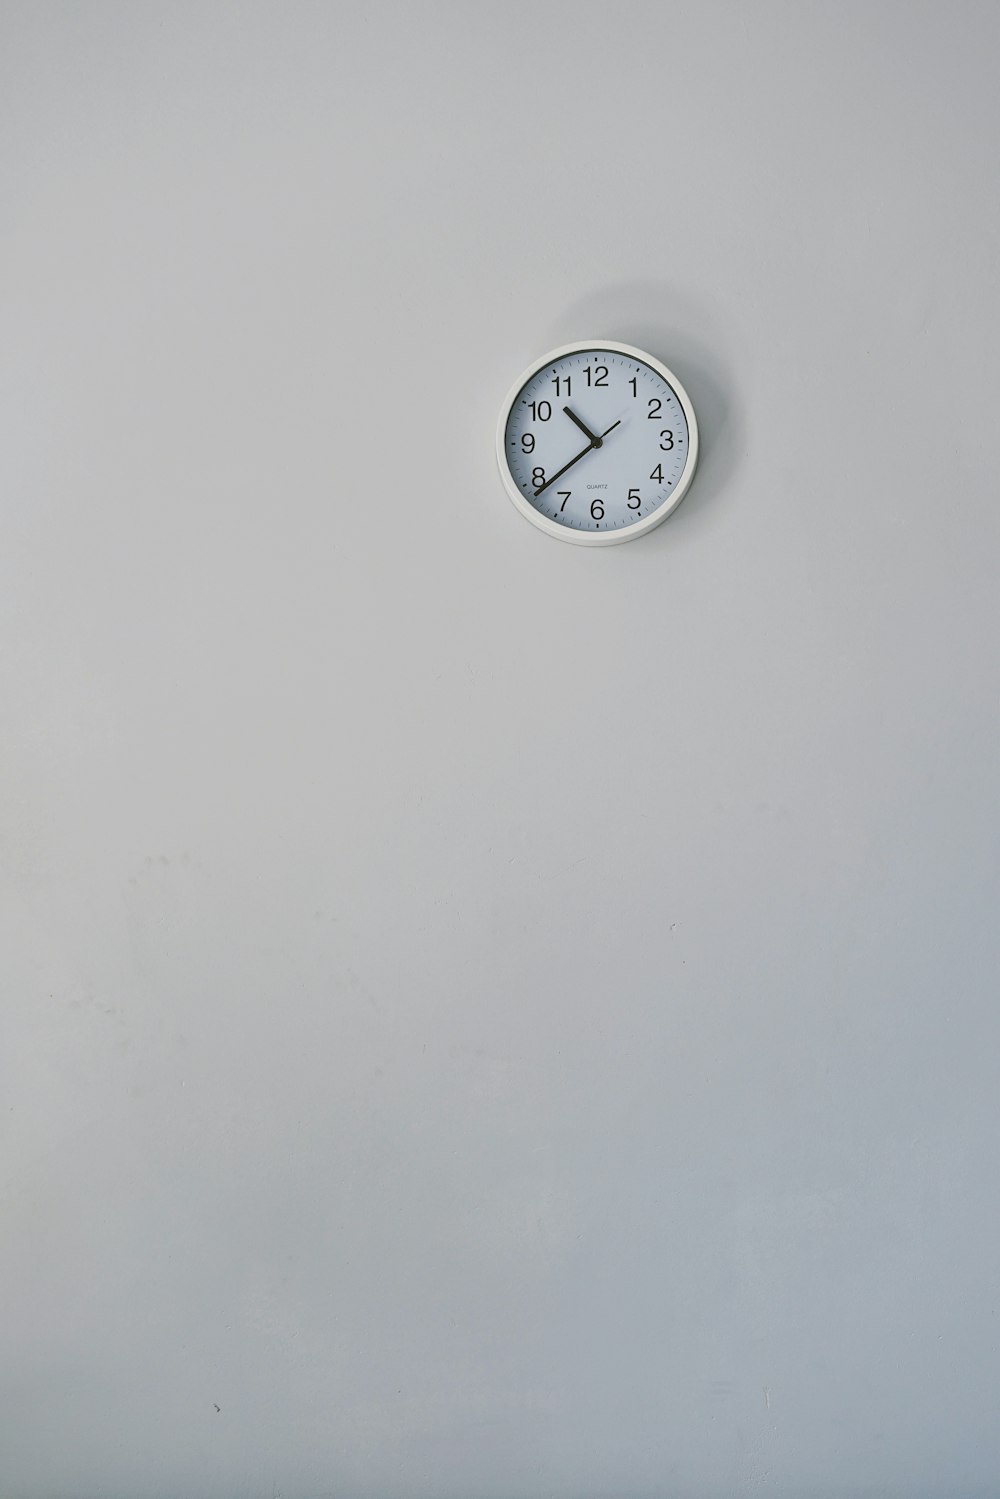 Orologio da parete analogico bianco rotondo visualizzato 10:38